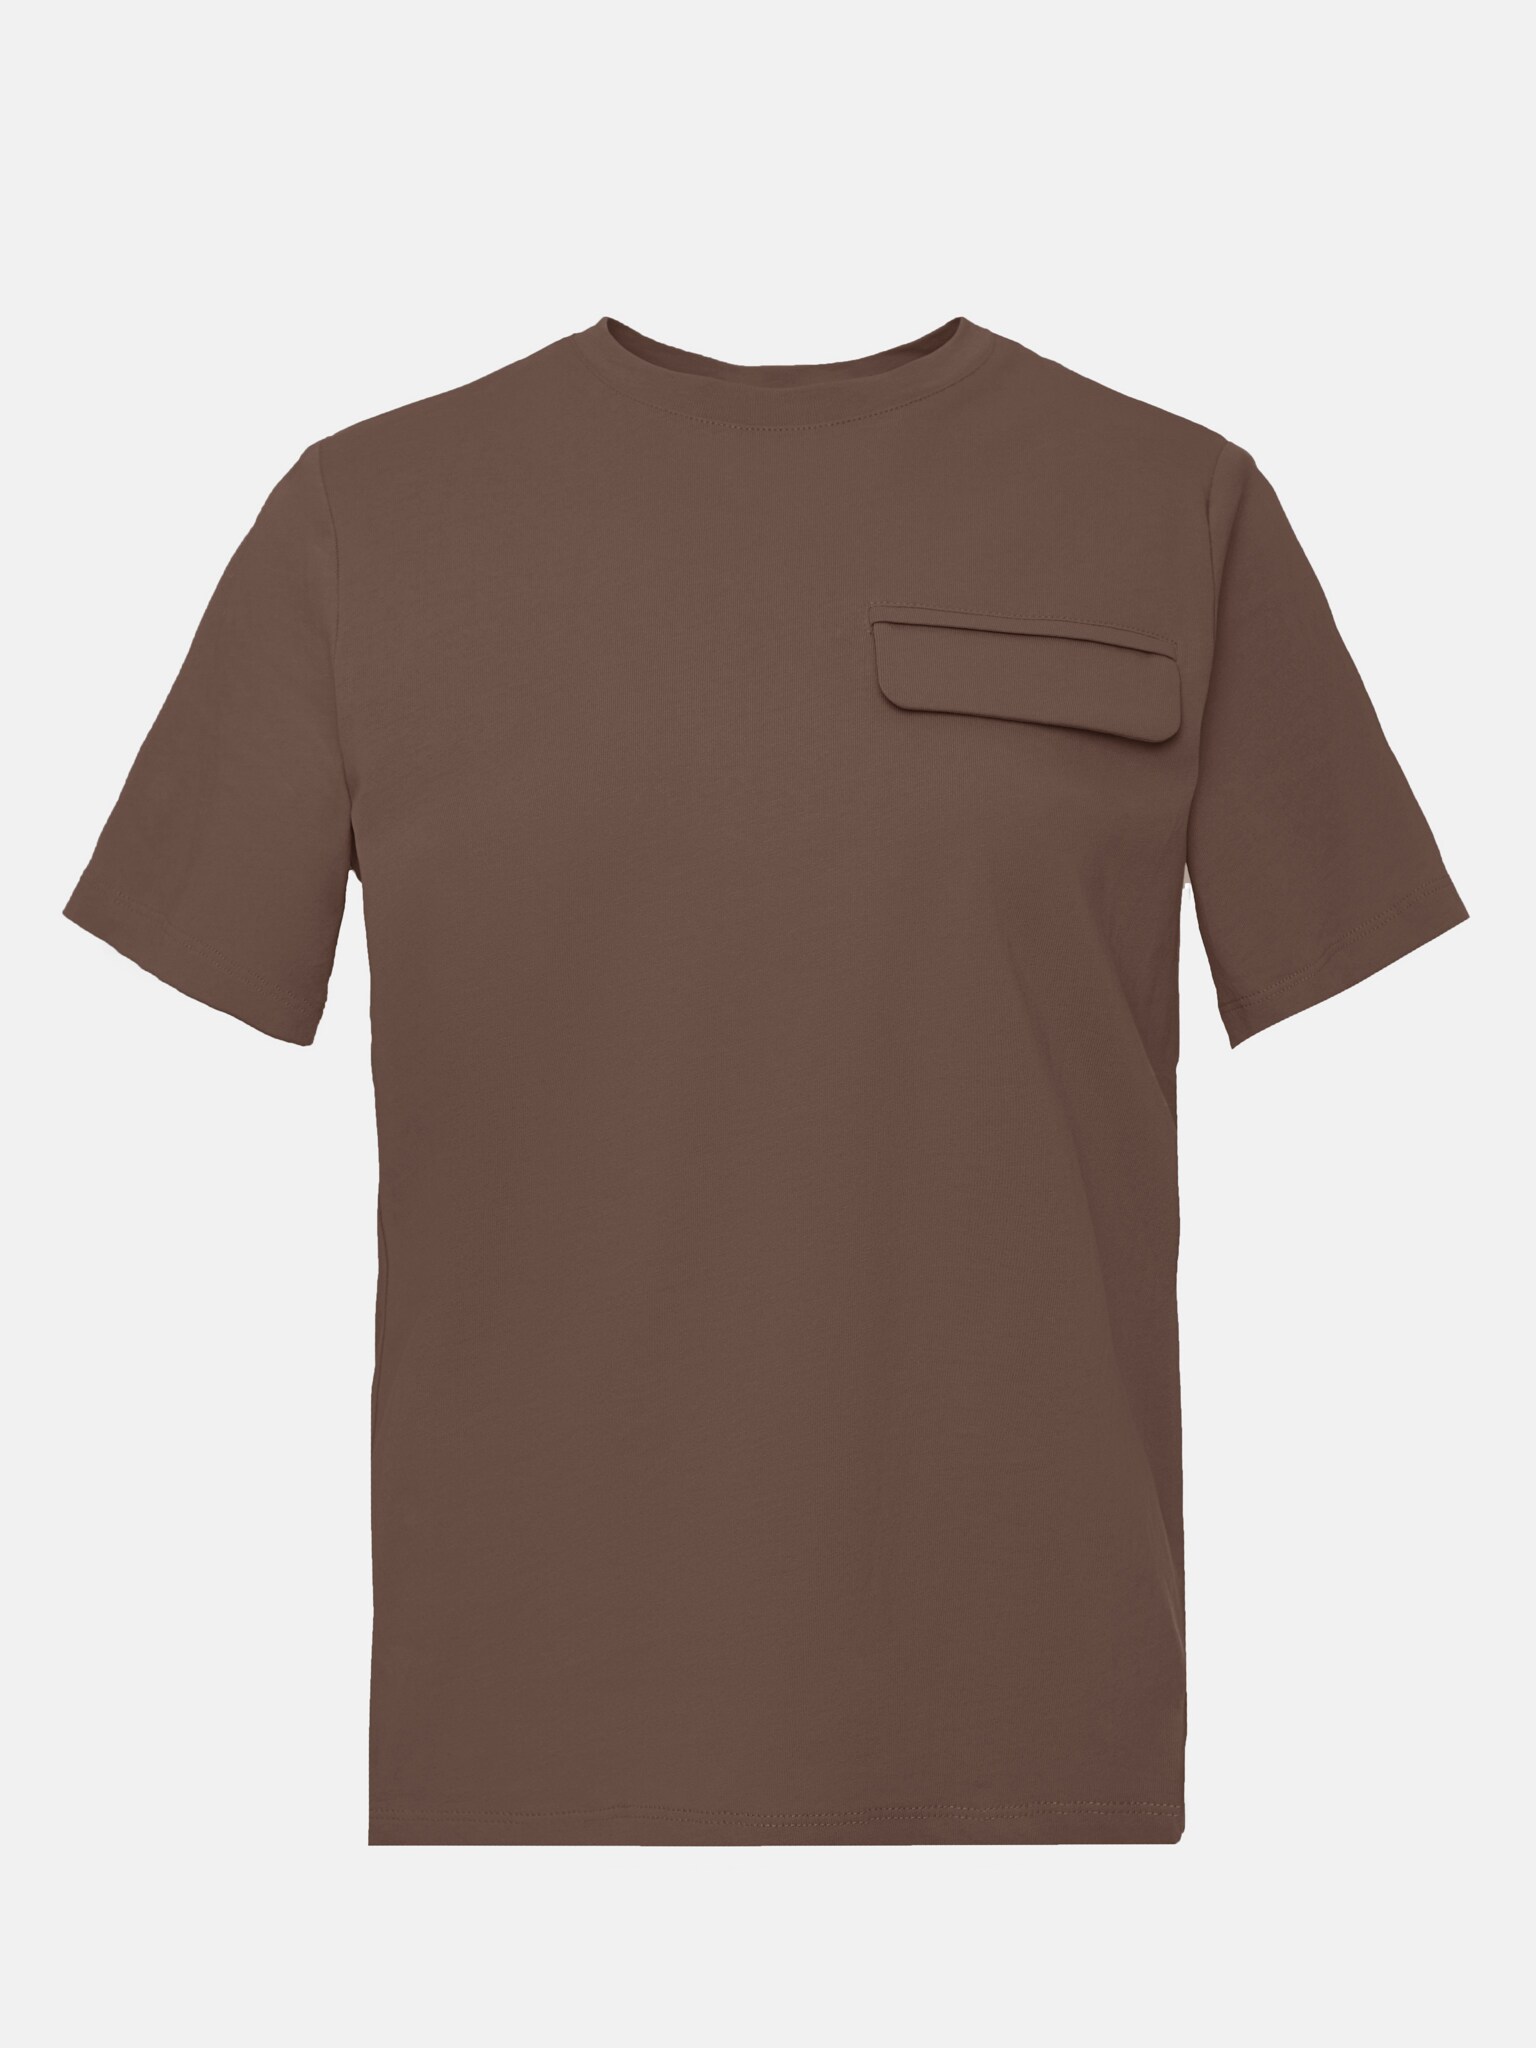 Baumwoll-T-Shirt mit Taschenverzierung